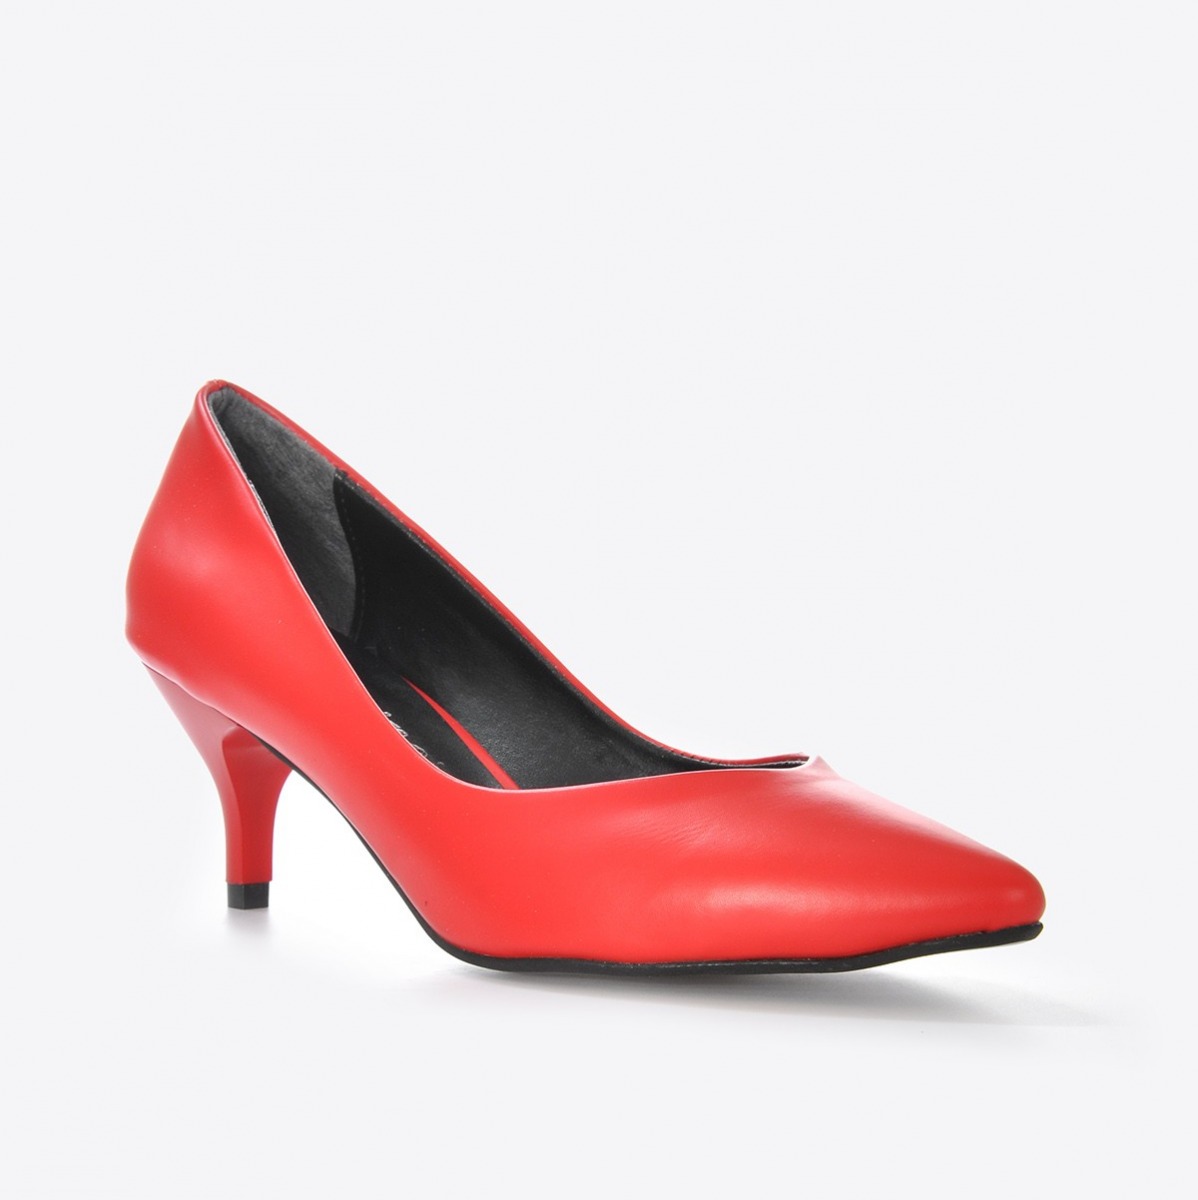 Flo Kadın Kırmızı Klasik Topuklu Ayakkabı VZN21-001Y. 1